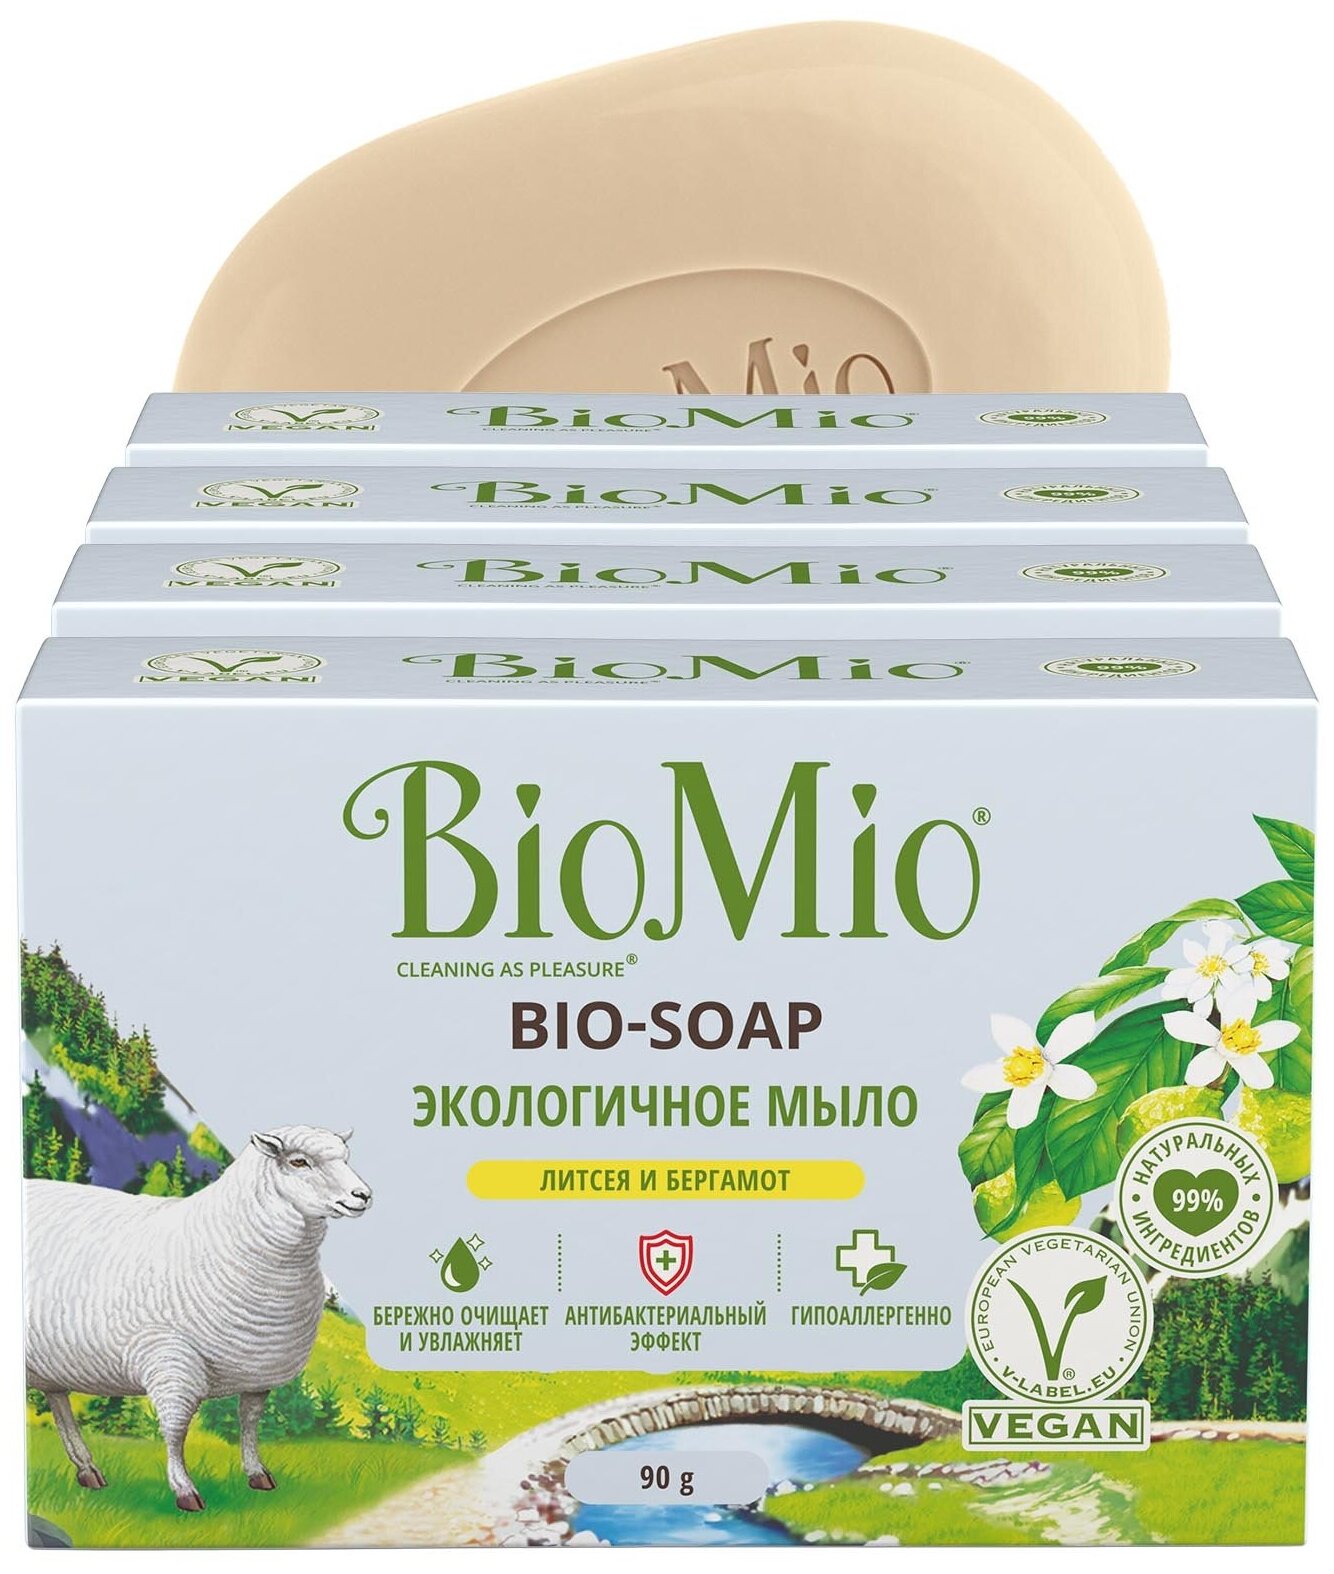 Экологичное туалетное мыло BioMio BIO-SOAP с эфирными маслами литсея и бергамота 90 гр х 4 шт